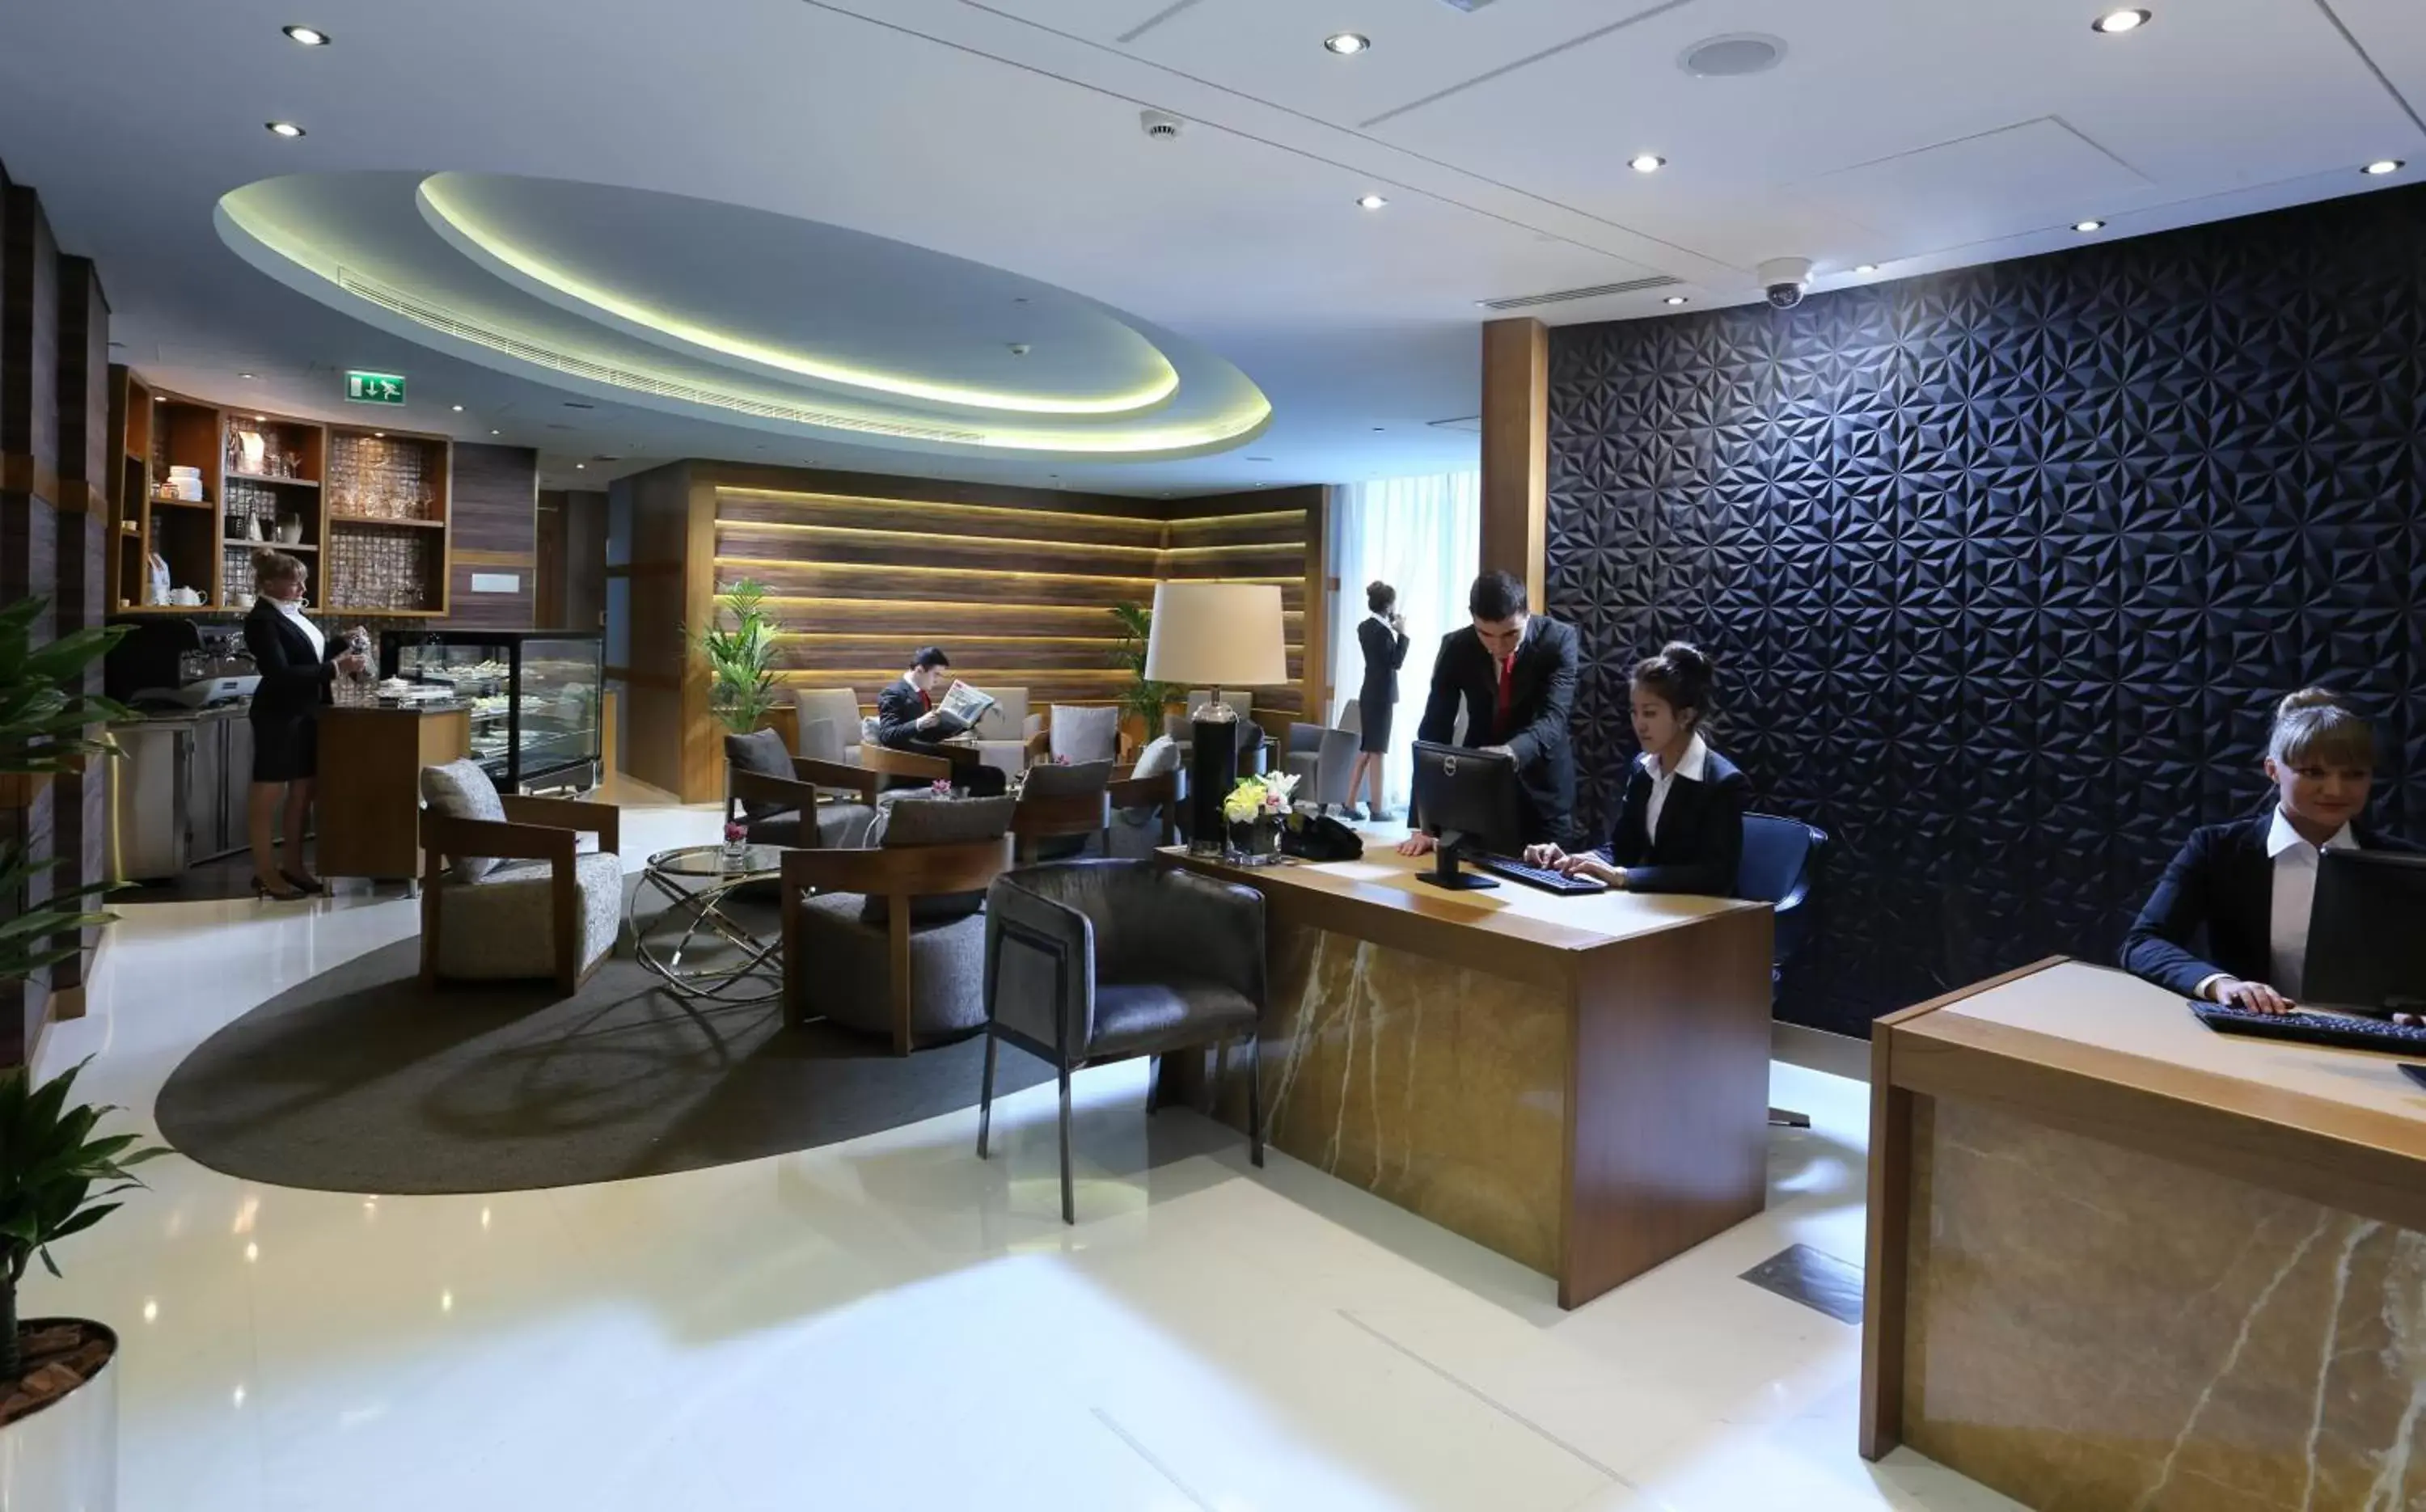 Lounge or bar, Lobby/Reception in TRYP by Wyndham Abu Dhabi City Center